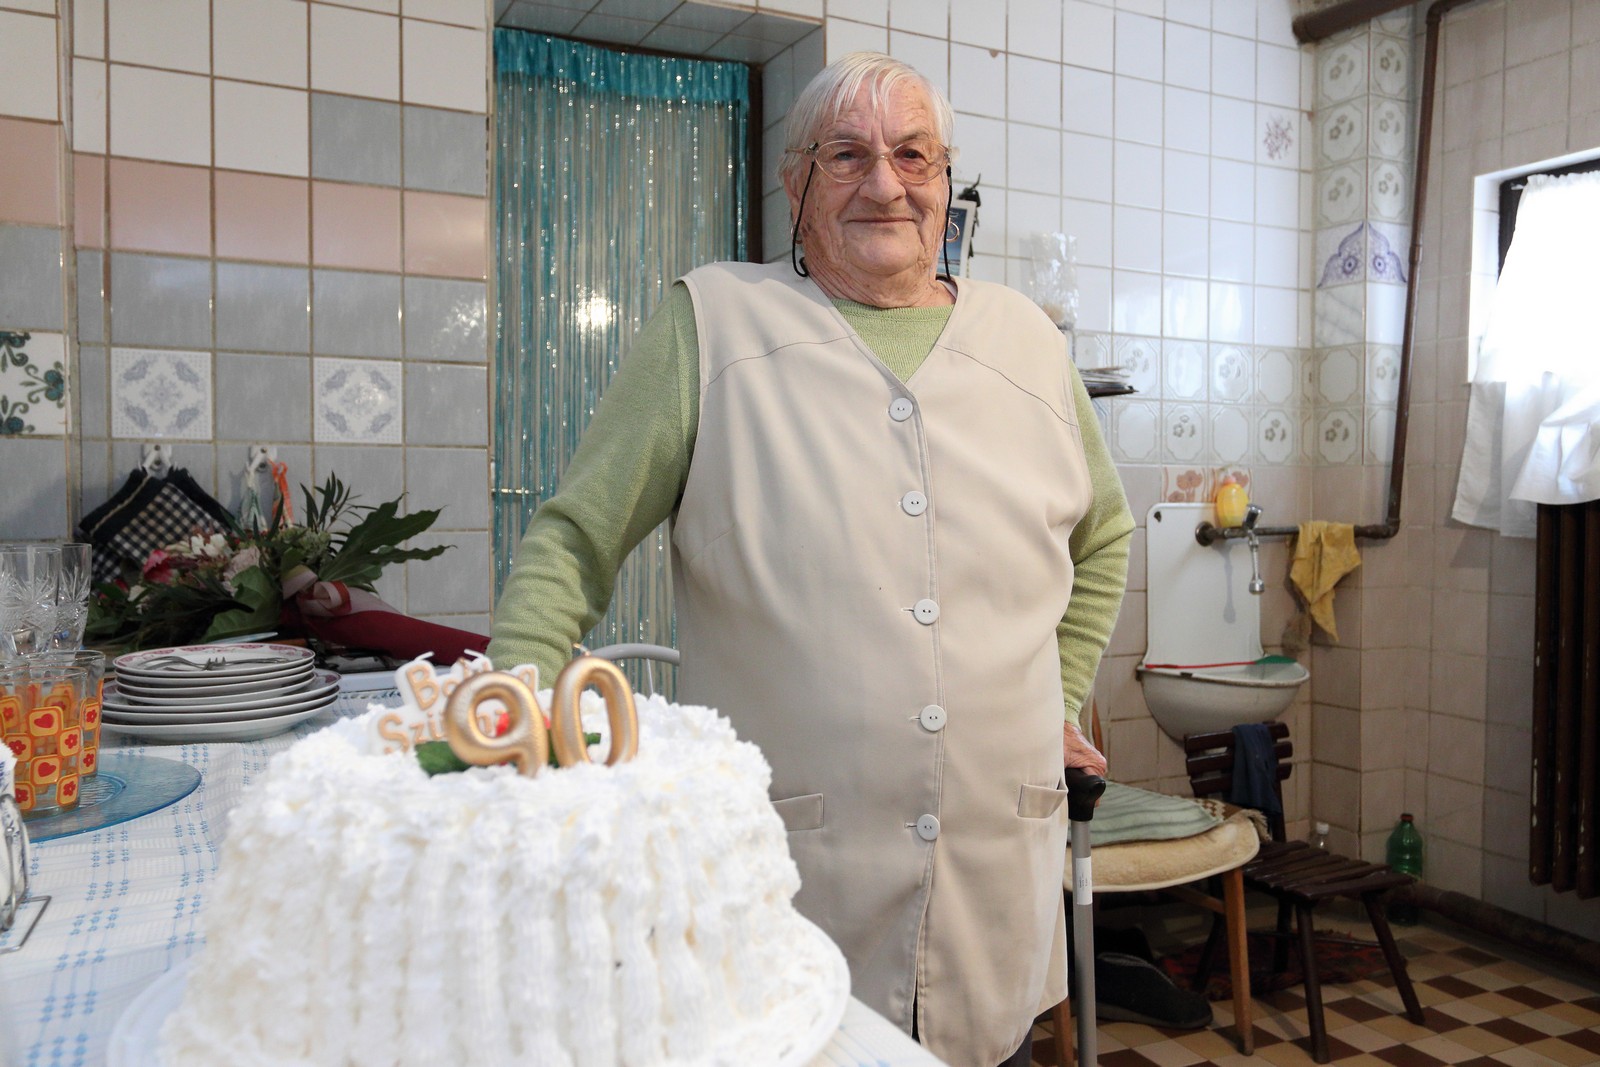 Saját készítésű oroszkrém torta az ünneplőknek - 90. születésnapján köszöntötték Havel Józsefné Rózsika nénit